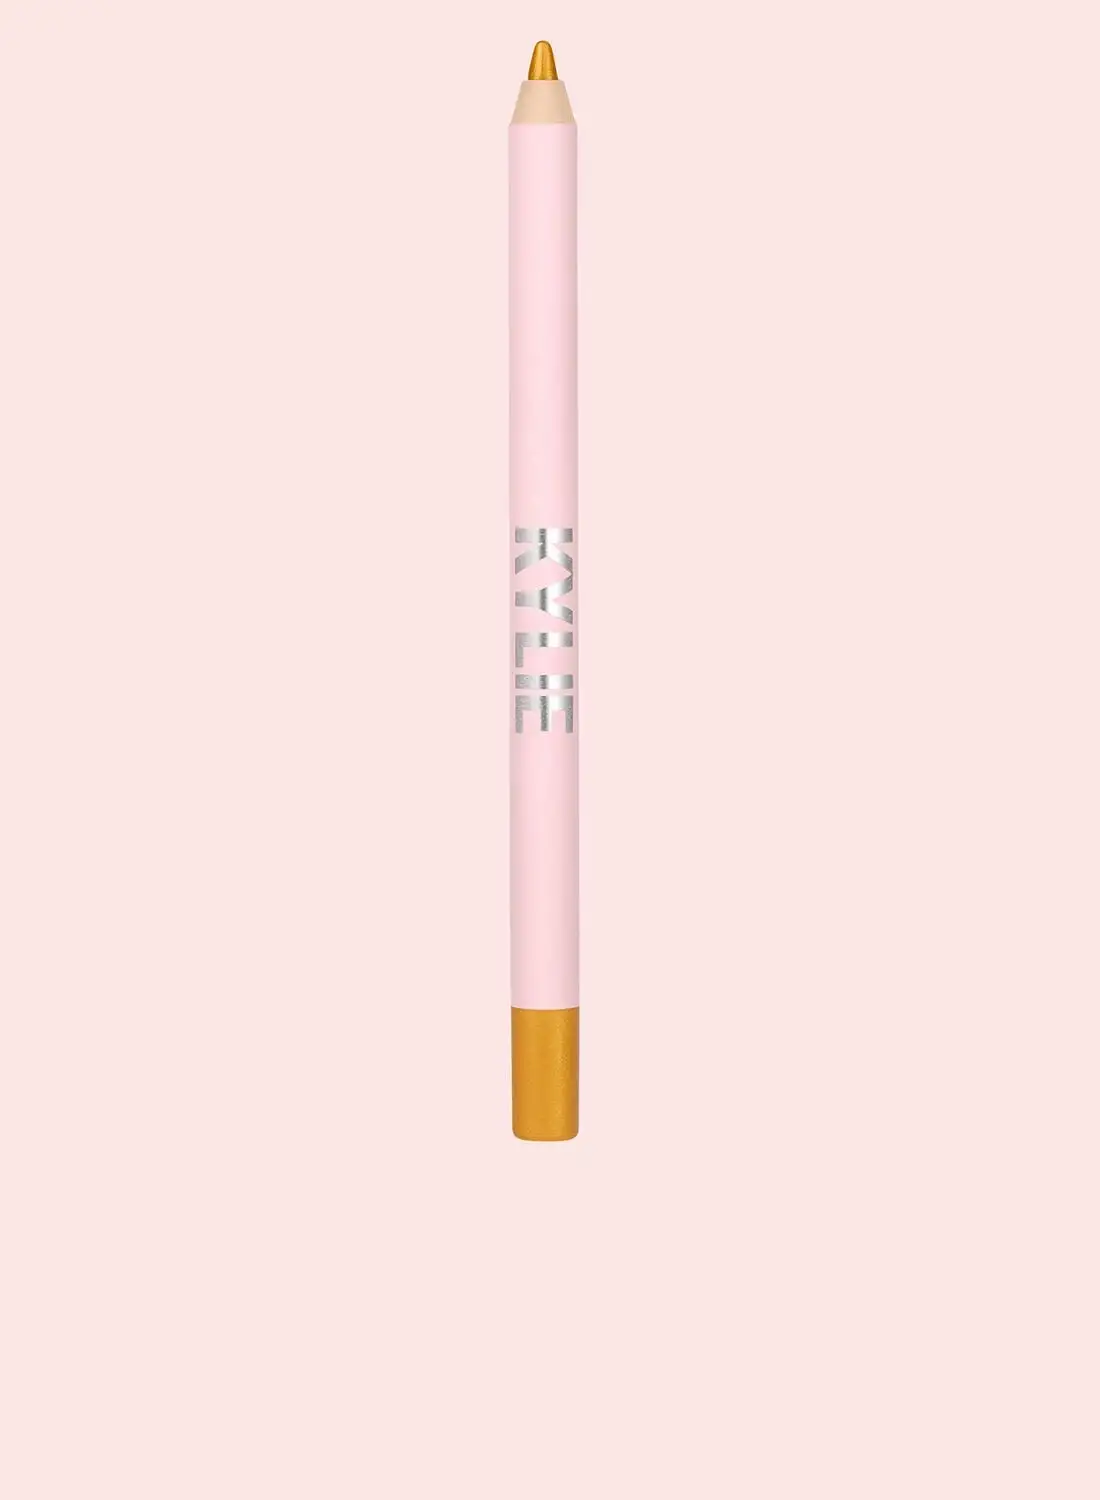 Kylie Cosmetics Kyliner Waterproof Gel Eyeliner Pencil - 011 - Gold Shimmer